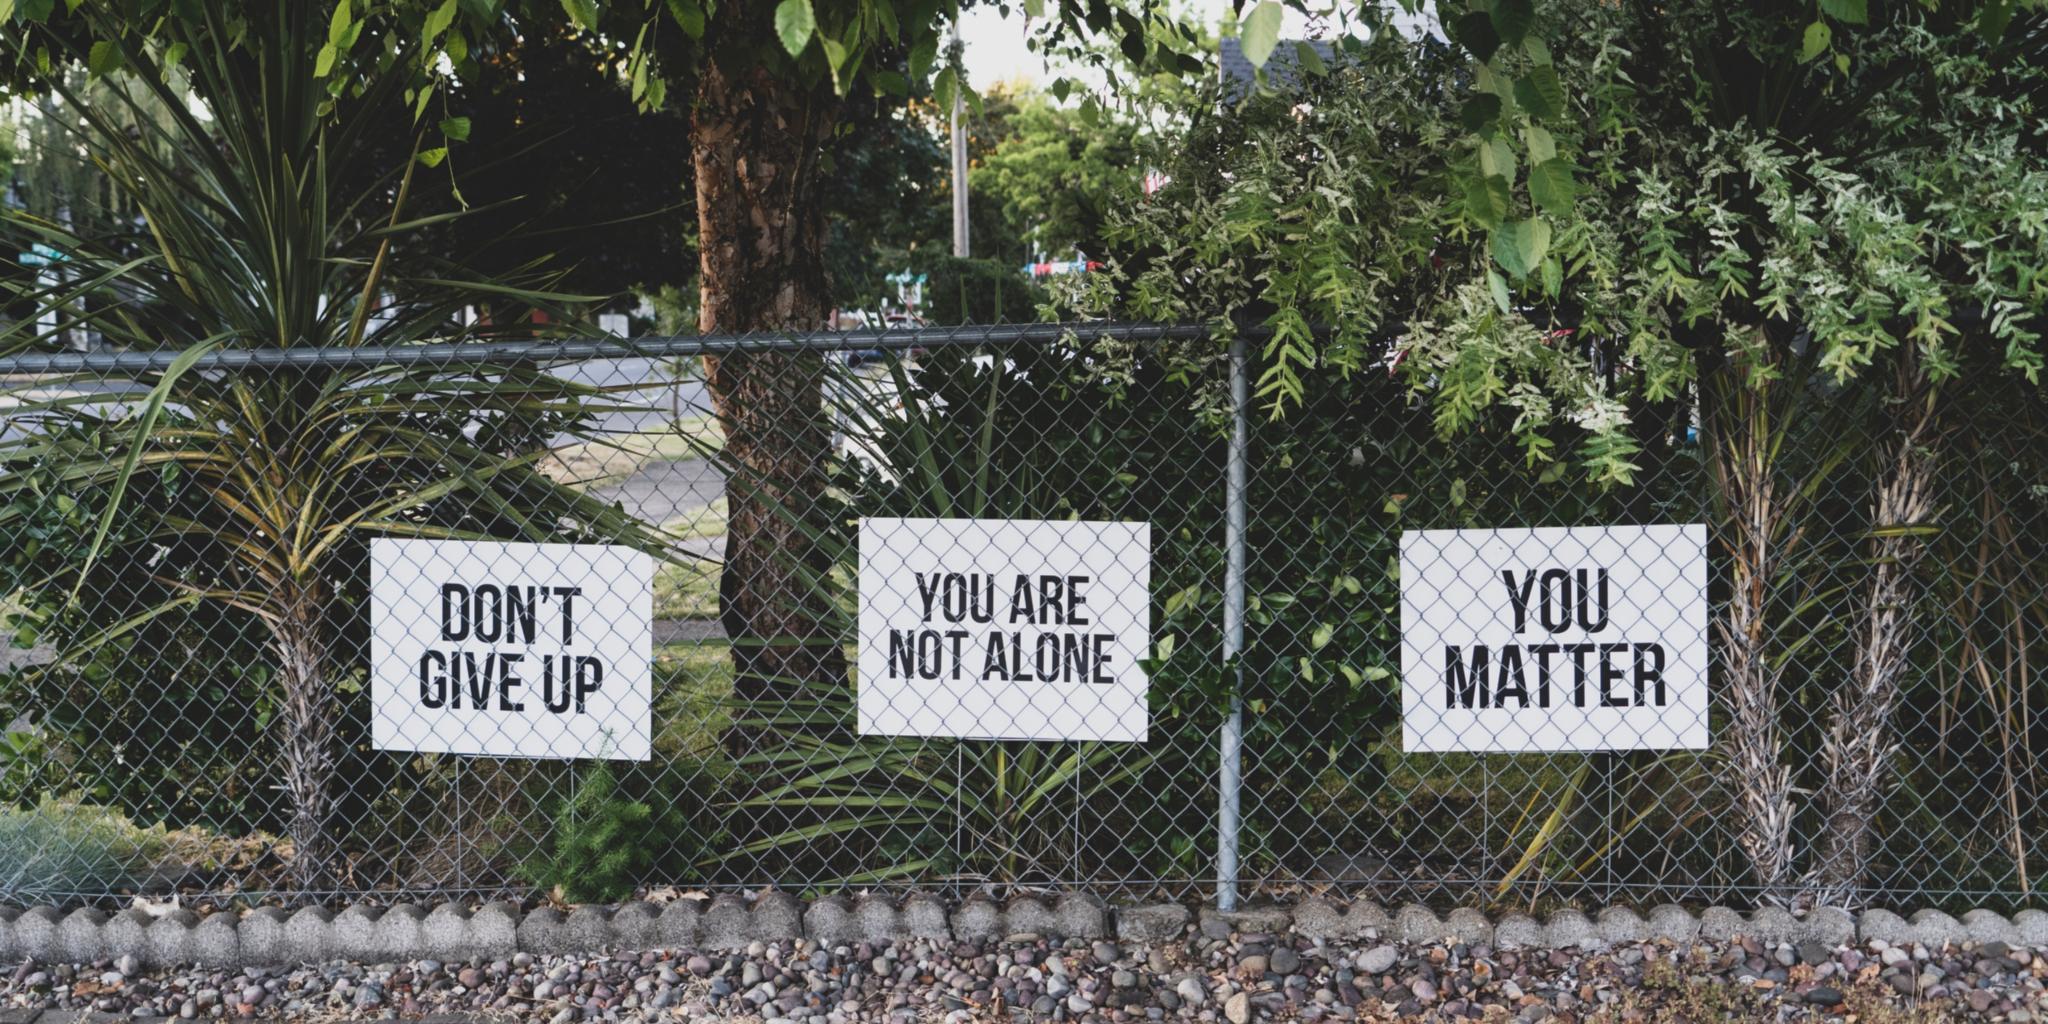 Man sieht einen Maschendrahtzaun, dahinter drei Schilder in Englisch beschriftet. Übersetzt: Geben Sie nicht auf! Sie sind nicht allein! Sie sind wichtig!